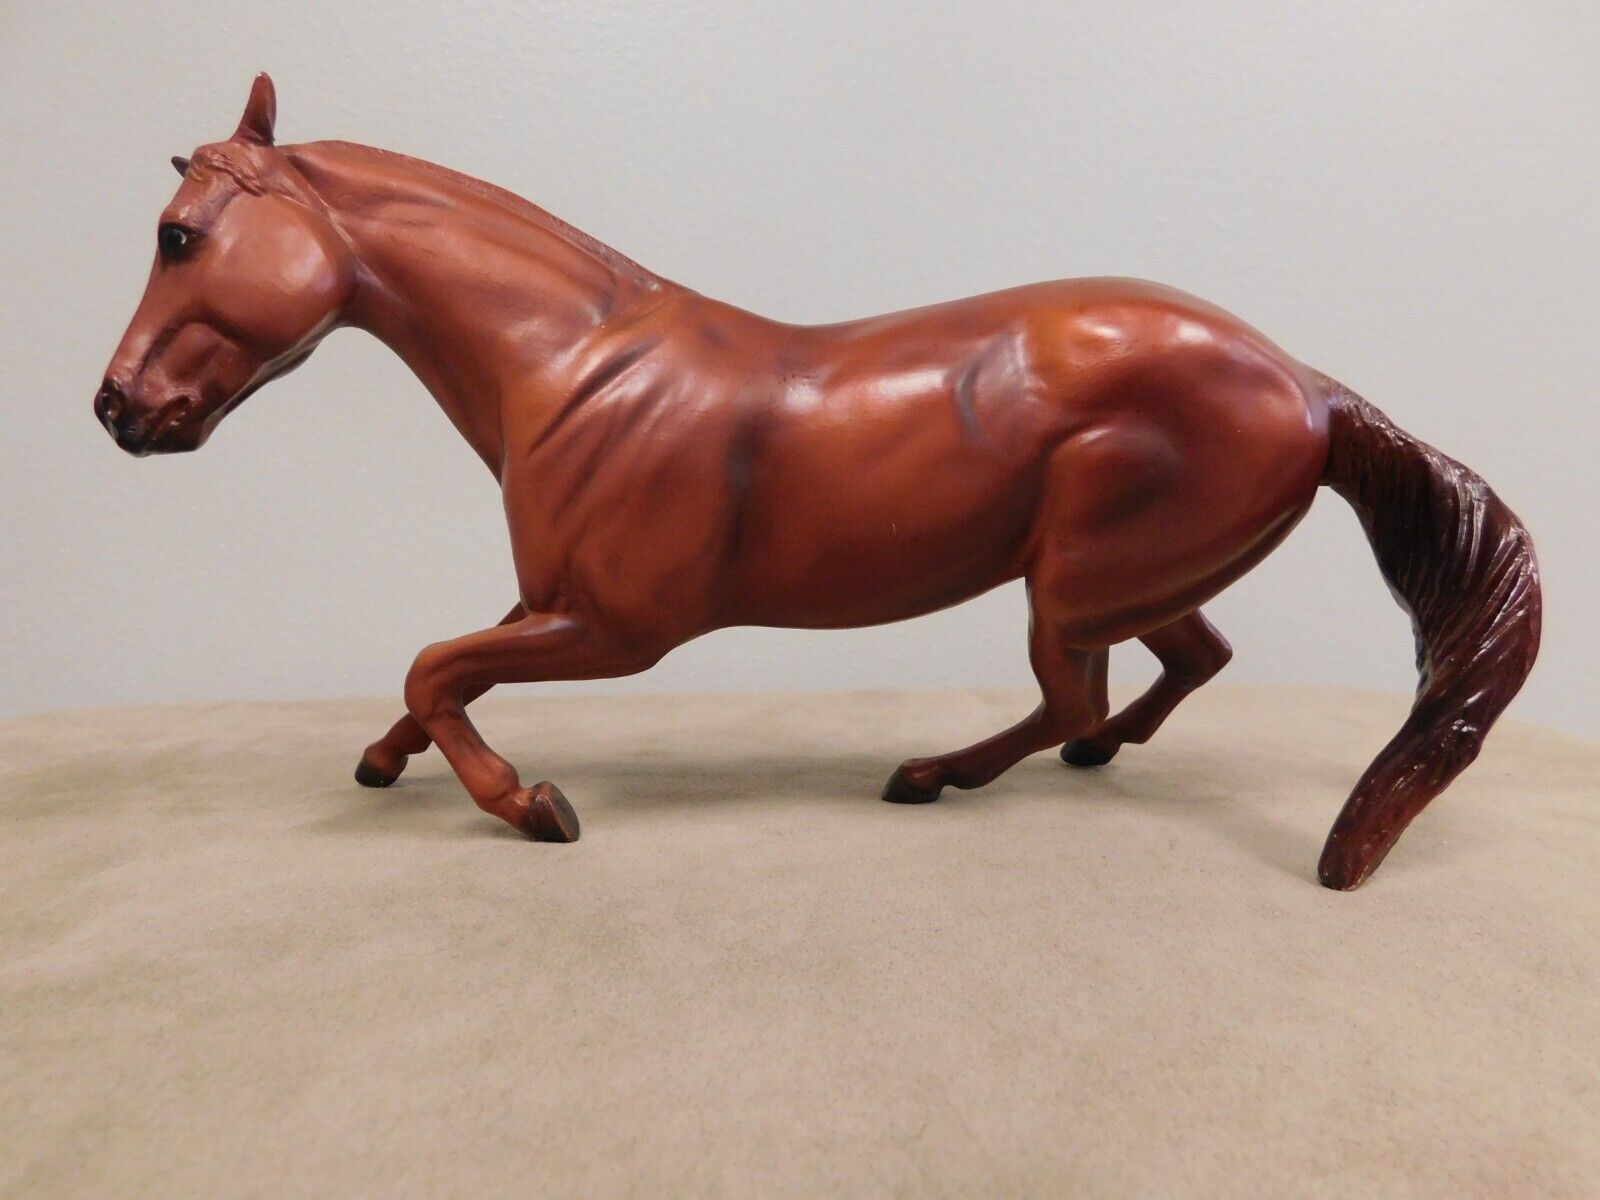 Breyer Flicka 2006 Classic Scamper Horse #750013